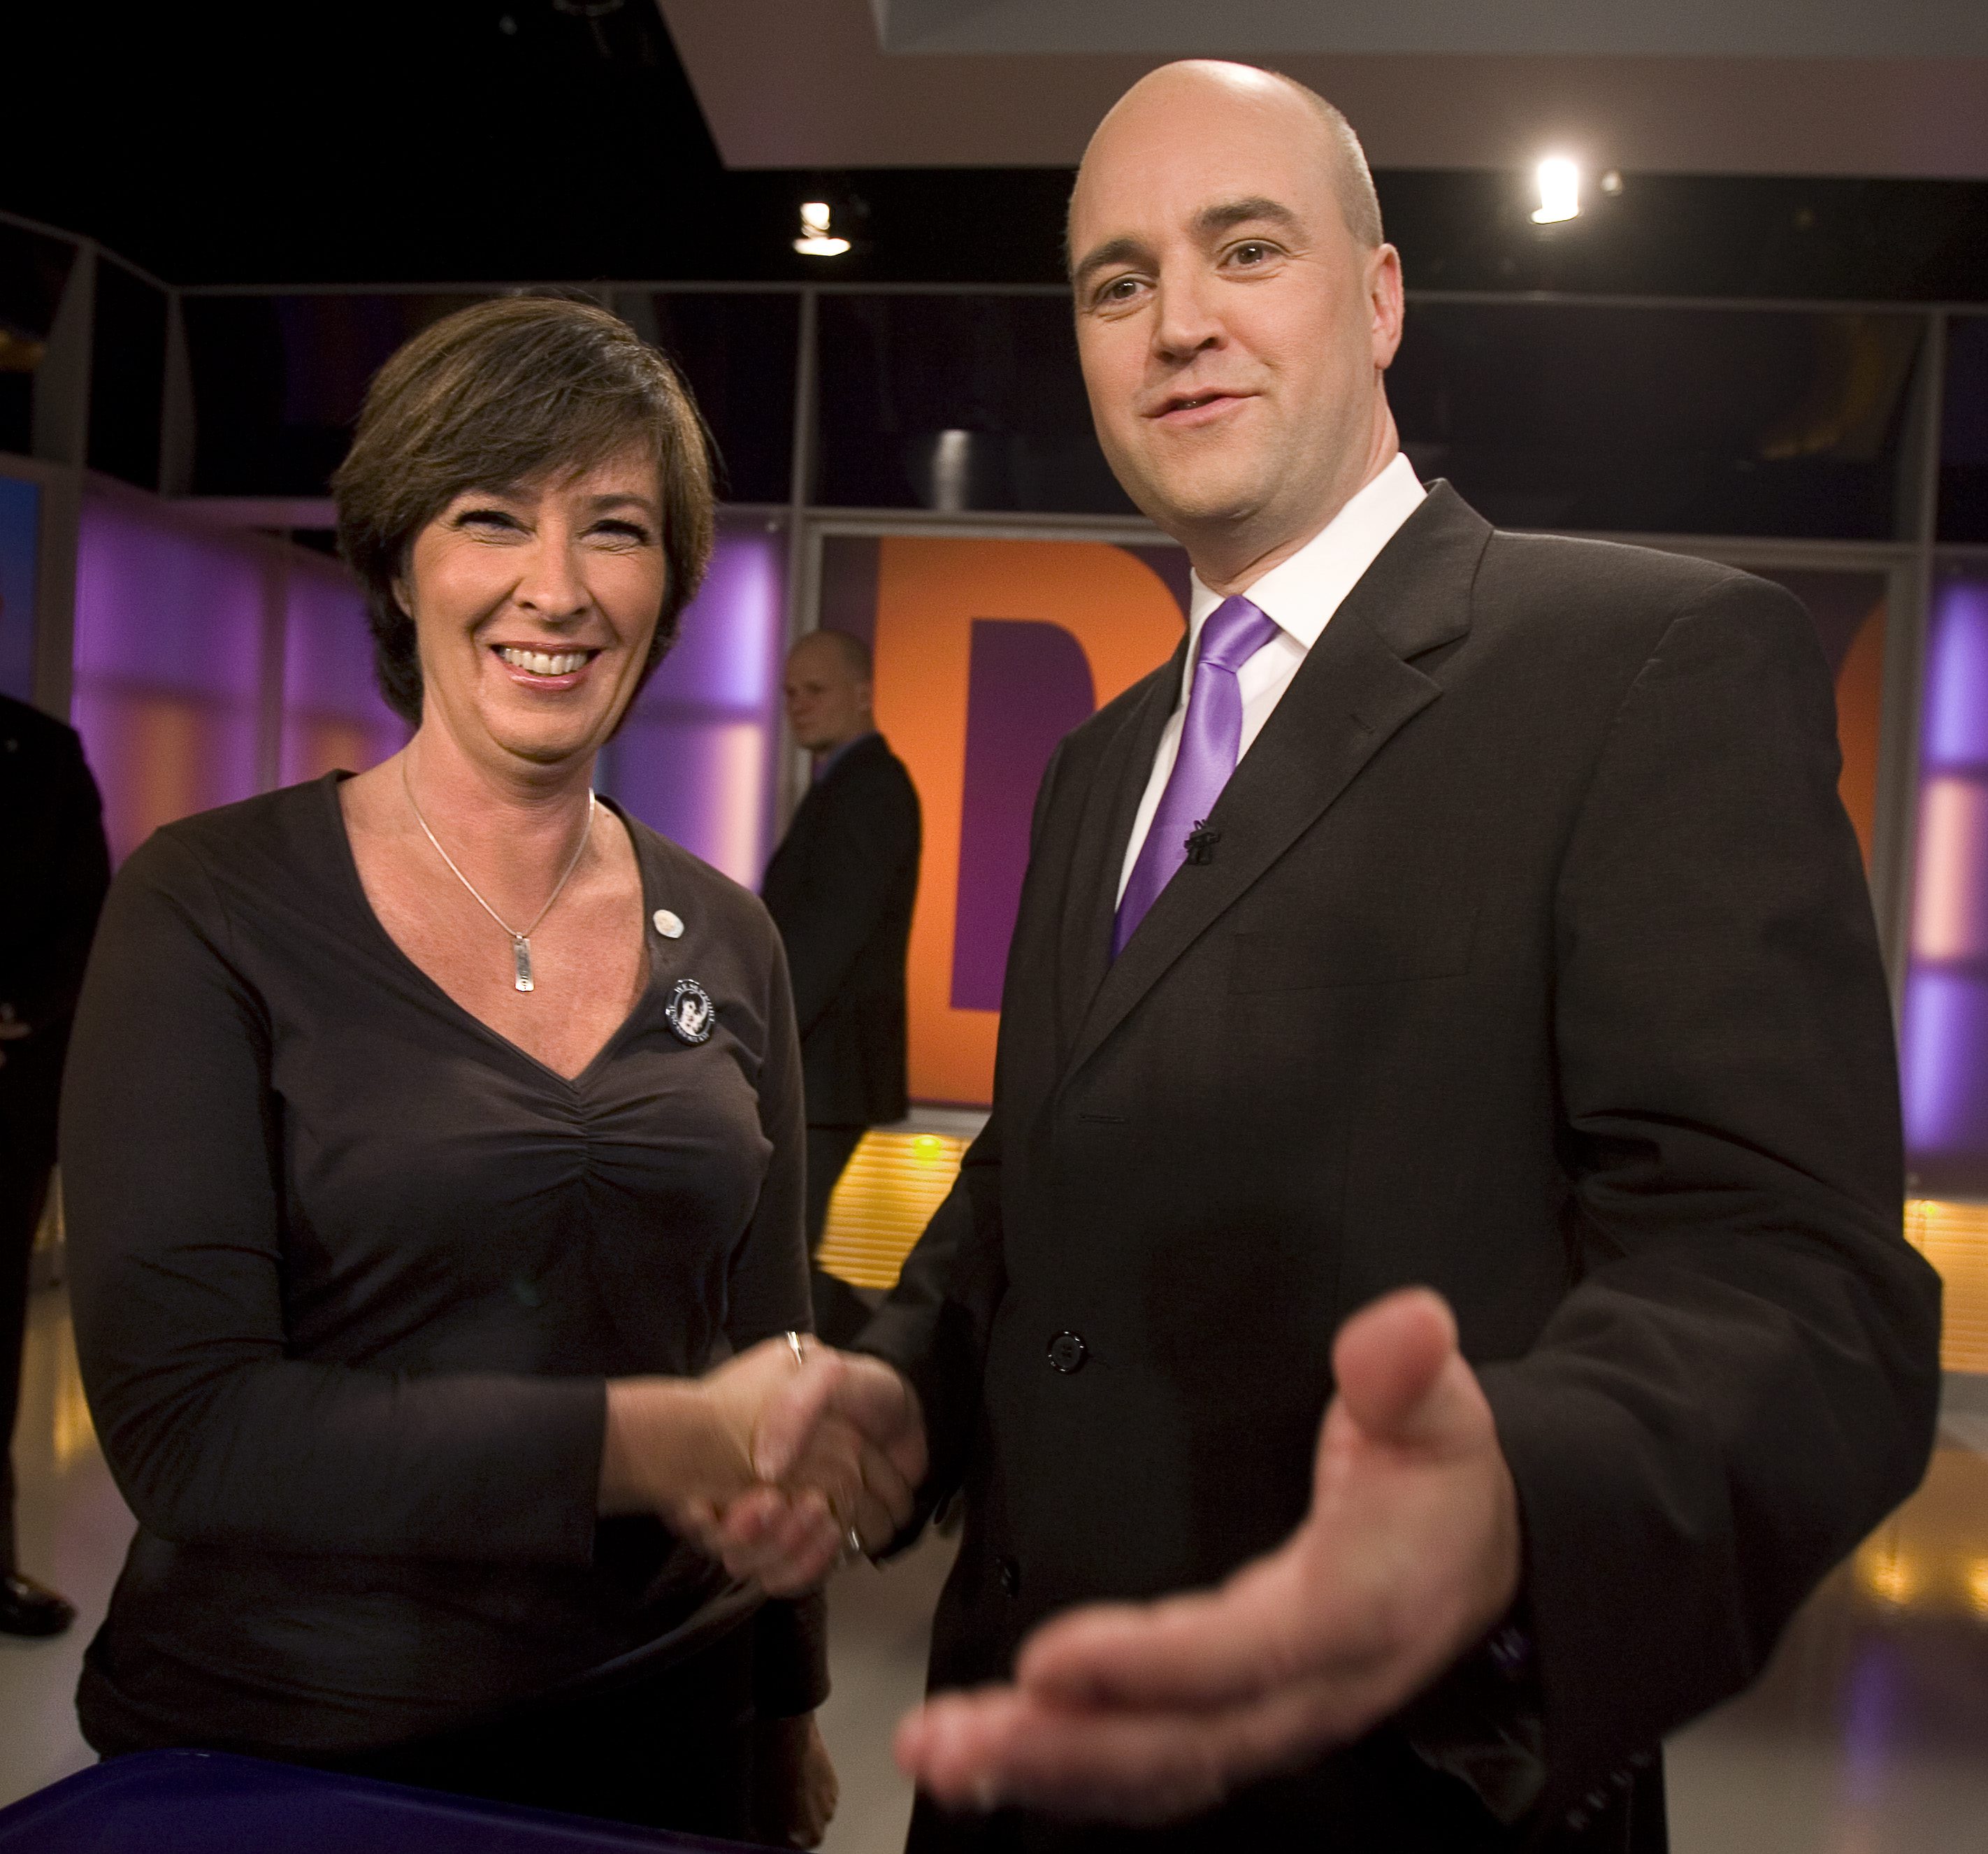 Fredrik Reinfeldt, Politik, Moderaterna, Riksdagsvalet 2010, Mona Sahlin, Regeringen, Alliansen, Socialdemokraterna, Oppositionen